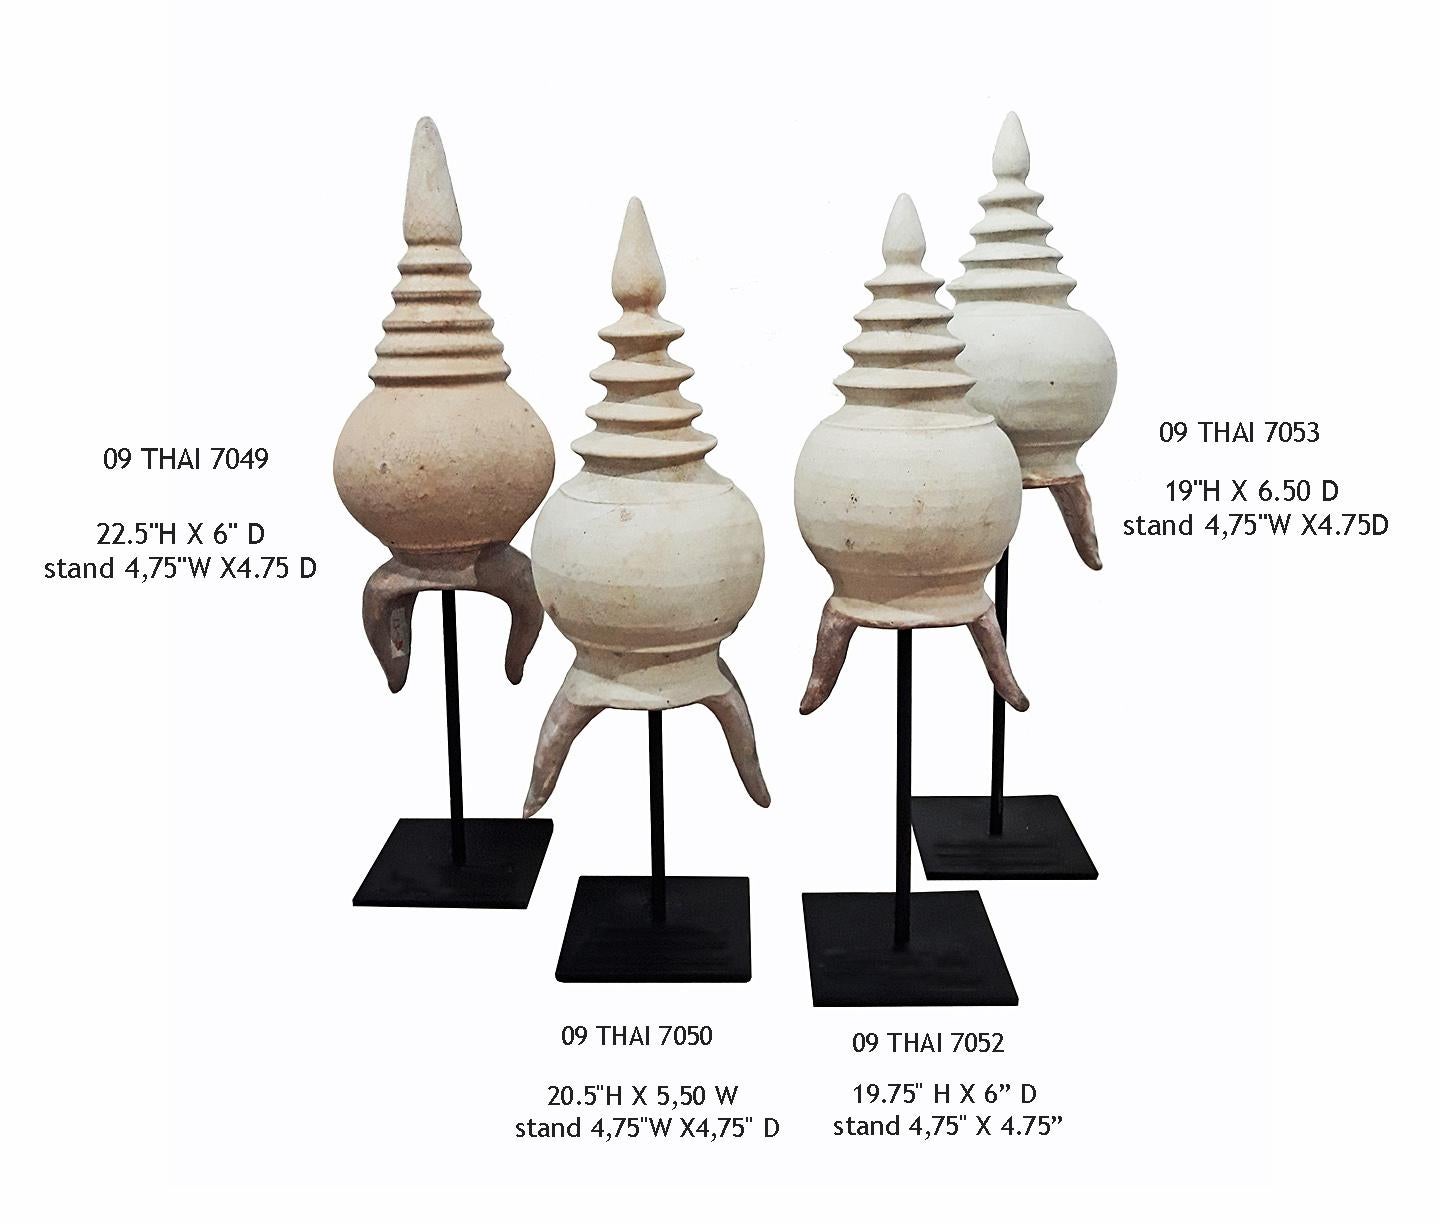 Thai Stupa Ceramic Details 8